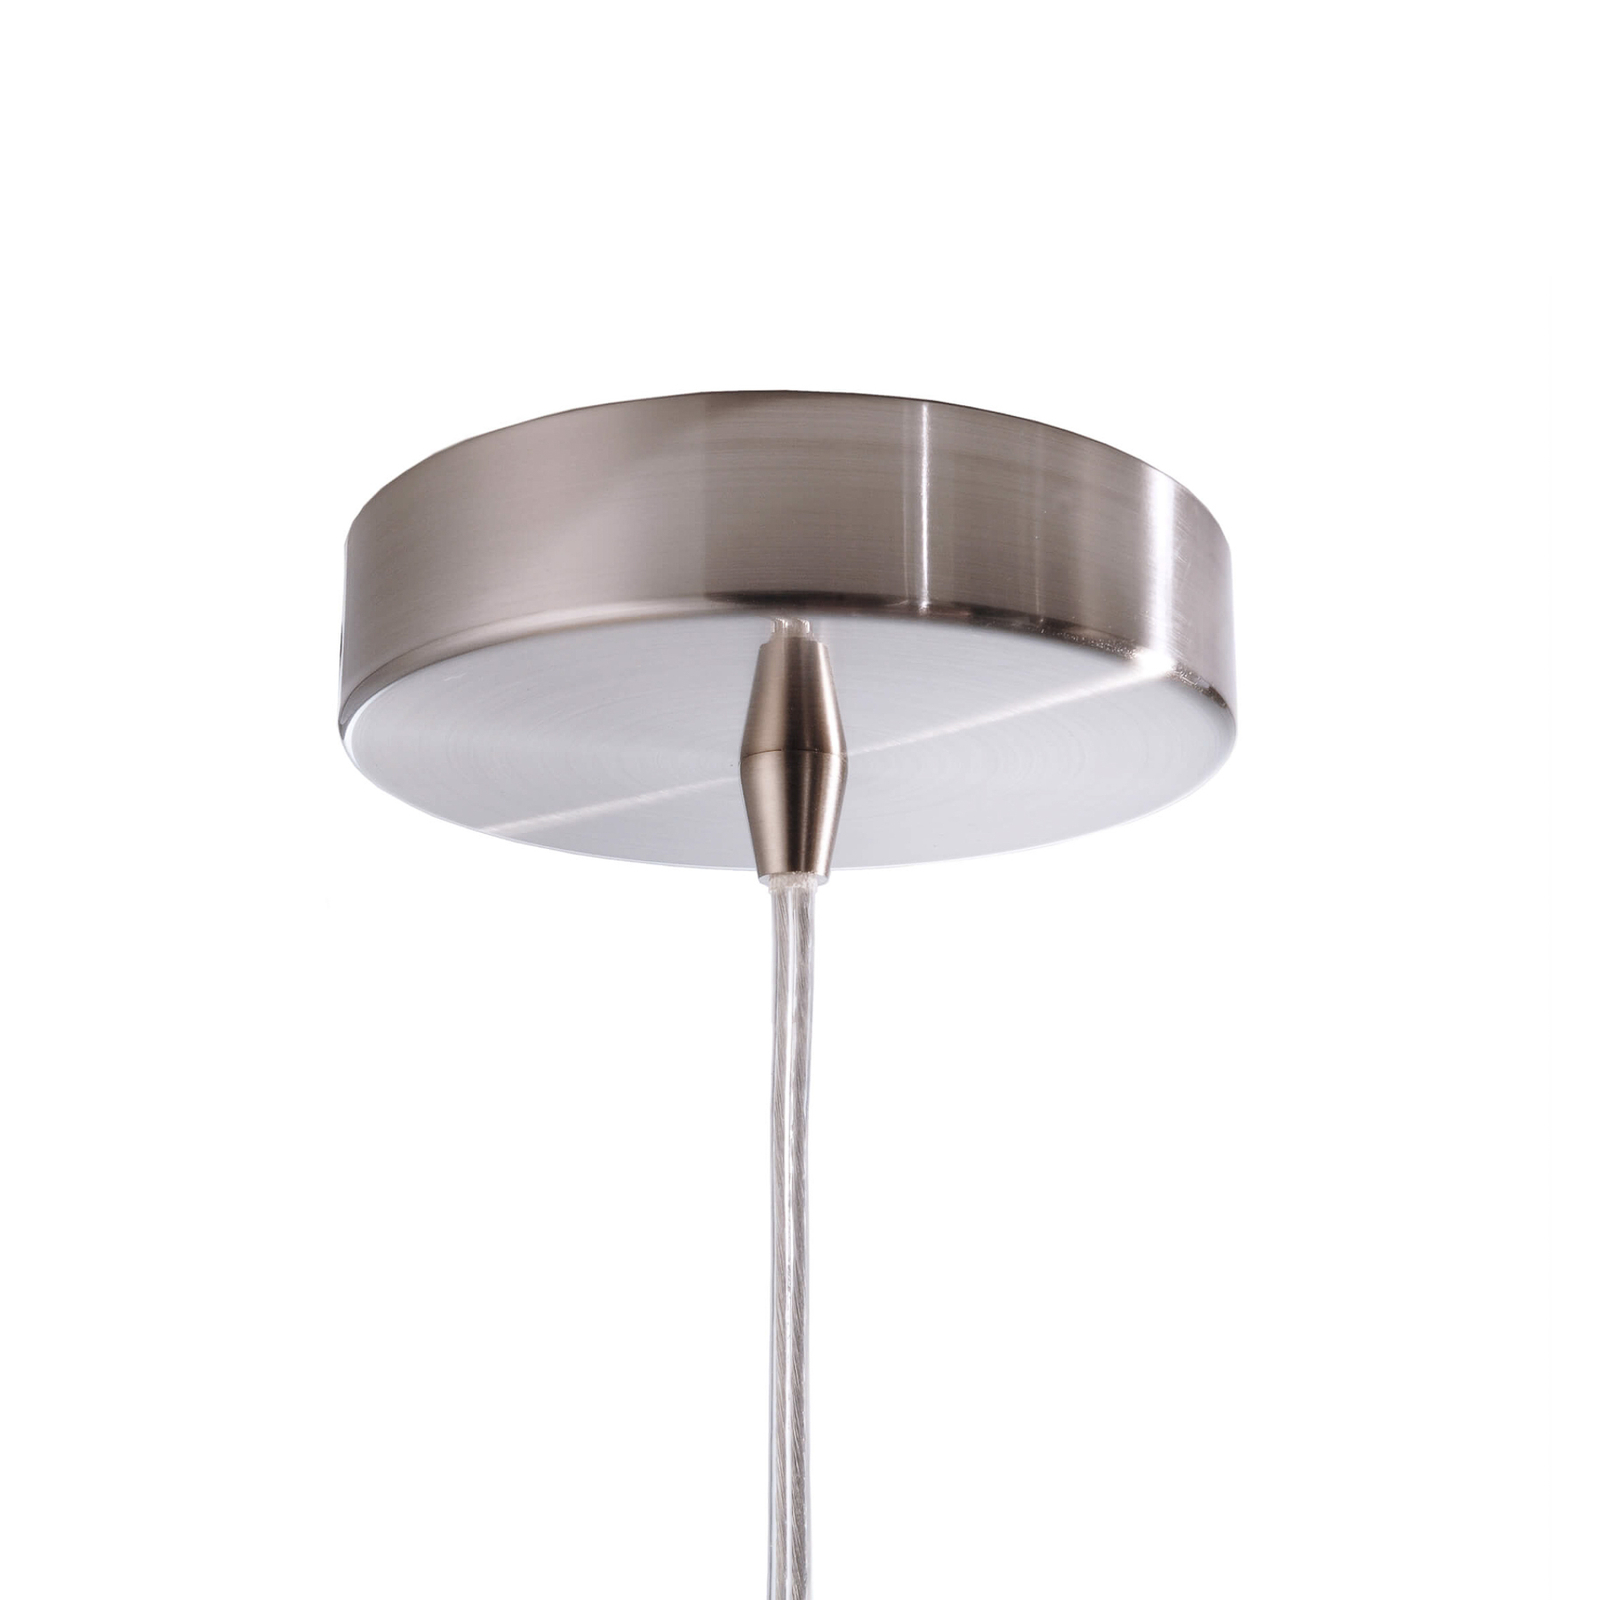 Hanglamp Bell als halfovaal in zilver